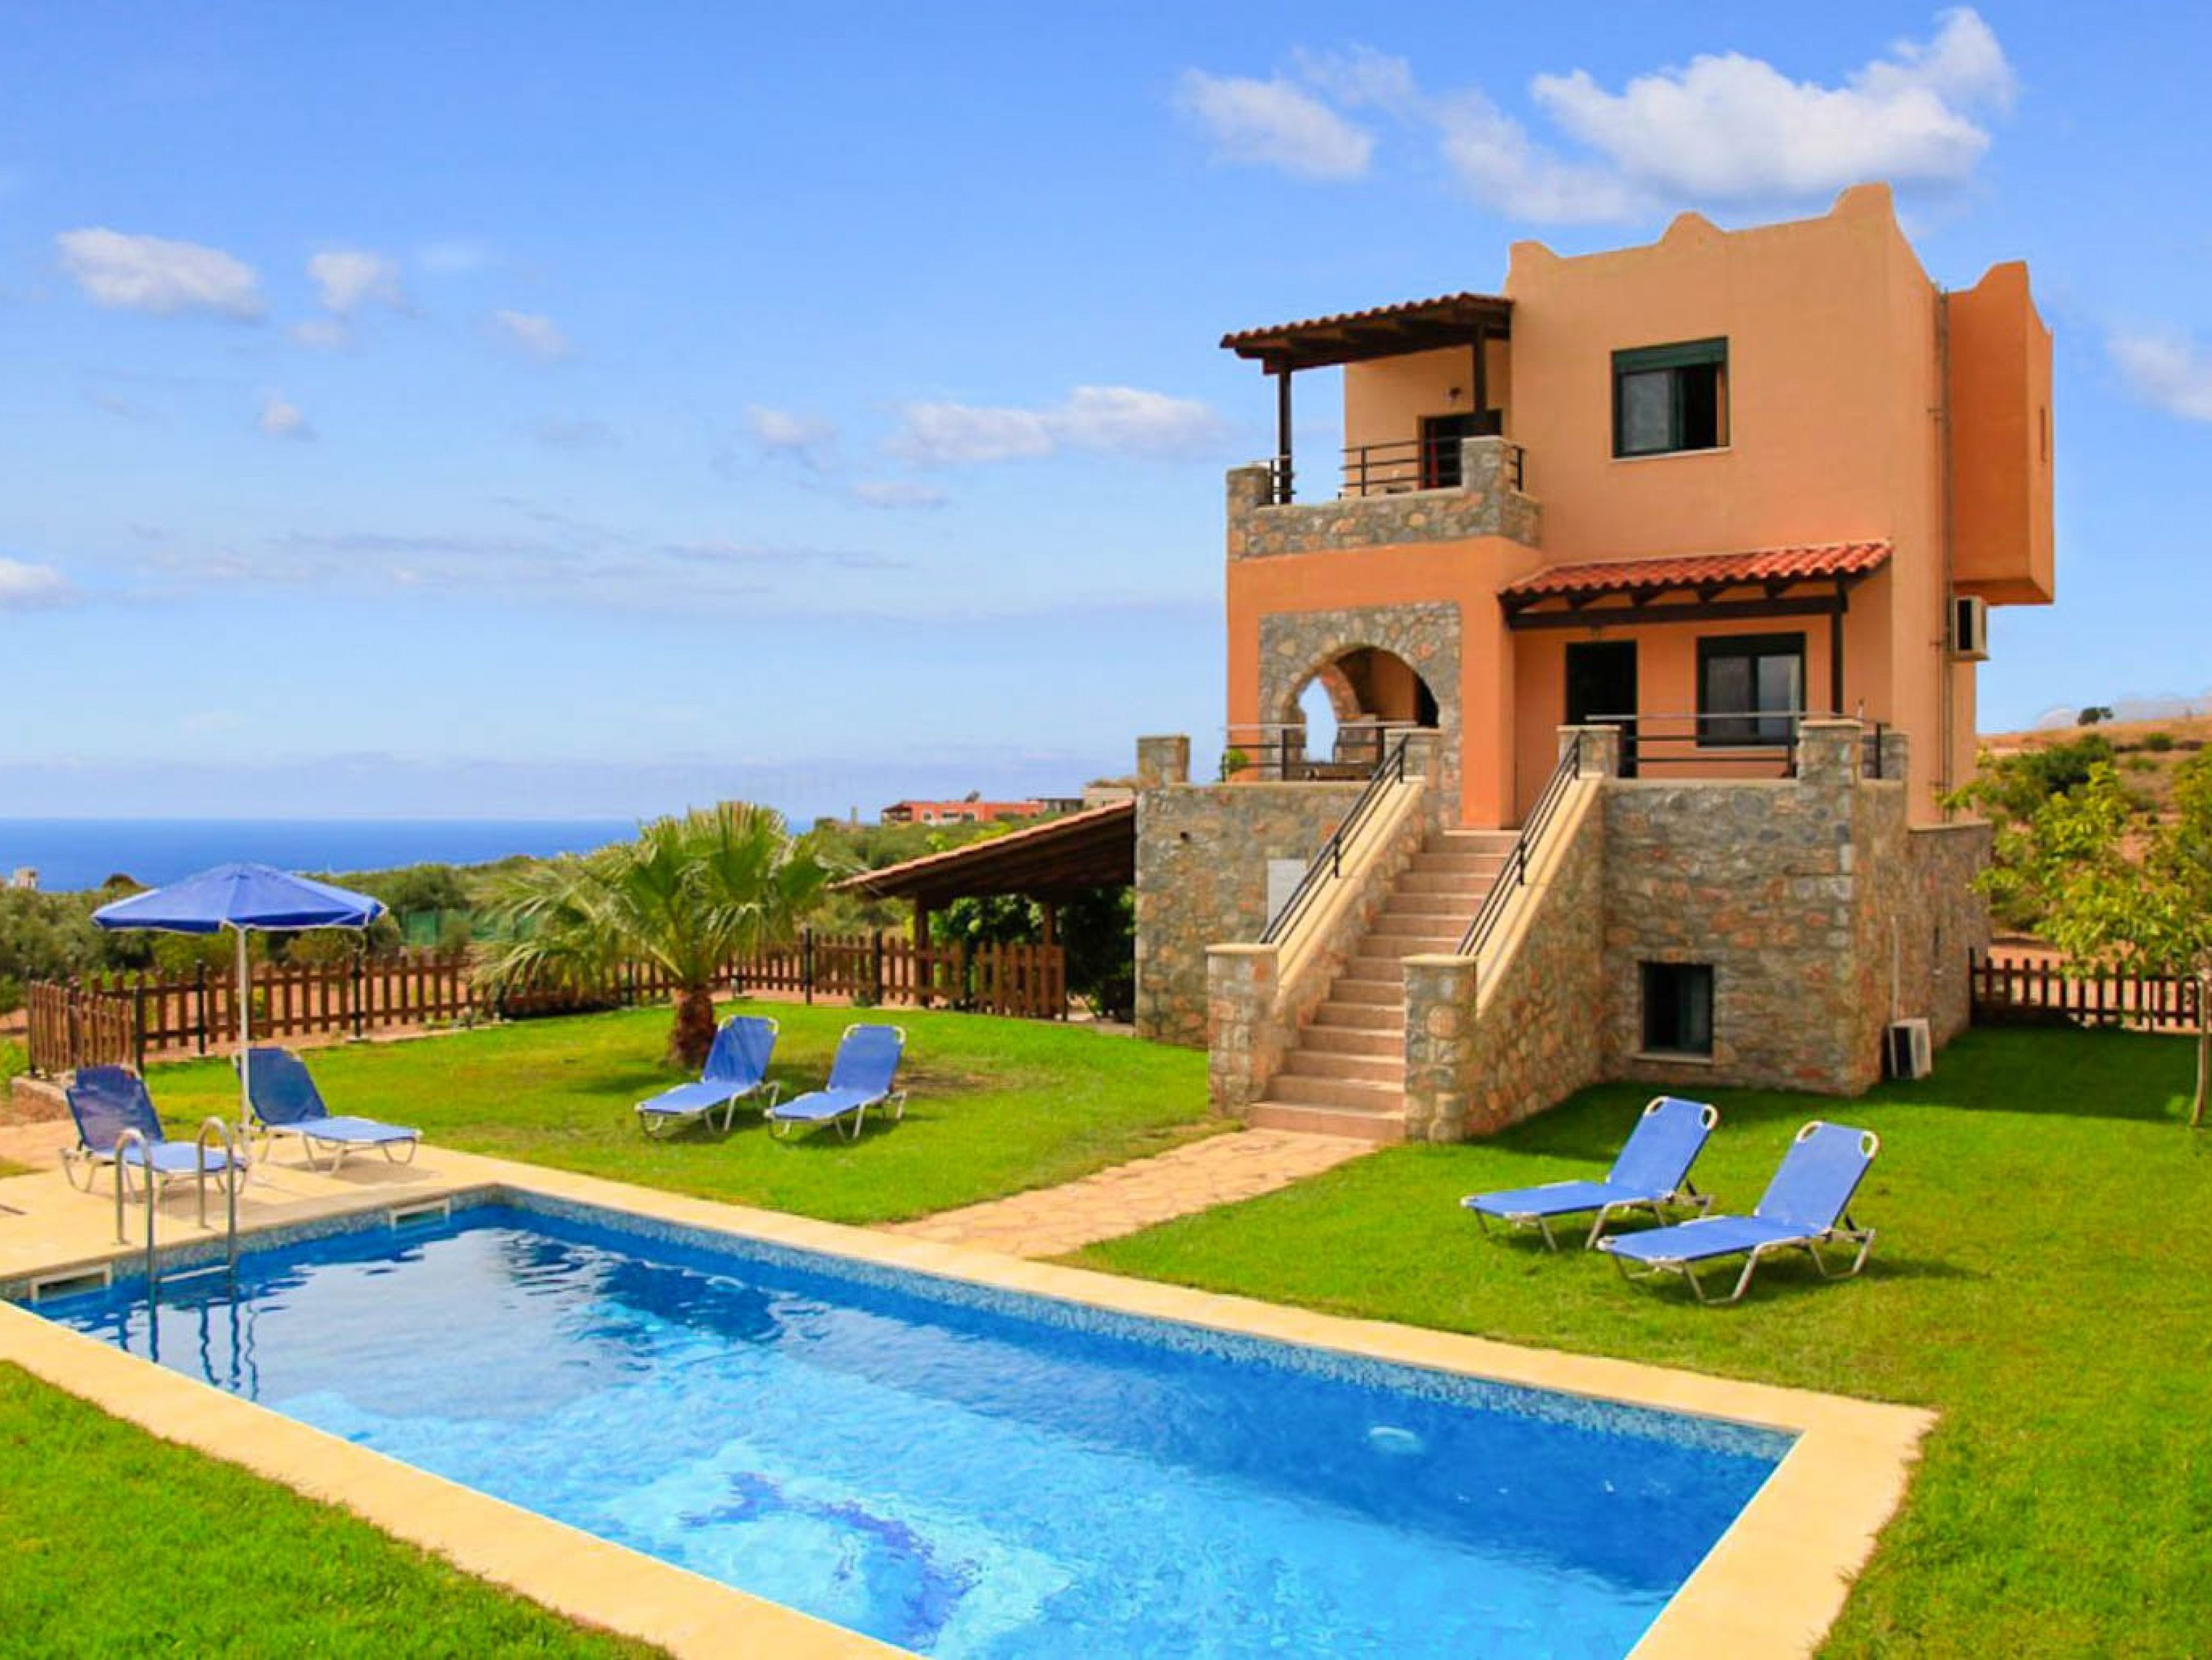 Theo Beach Villa 4 bedroom vacation rentals in Europe